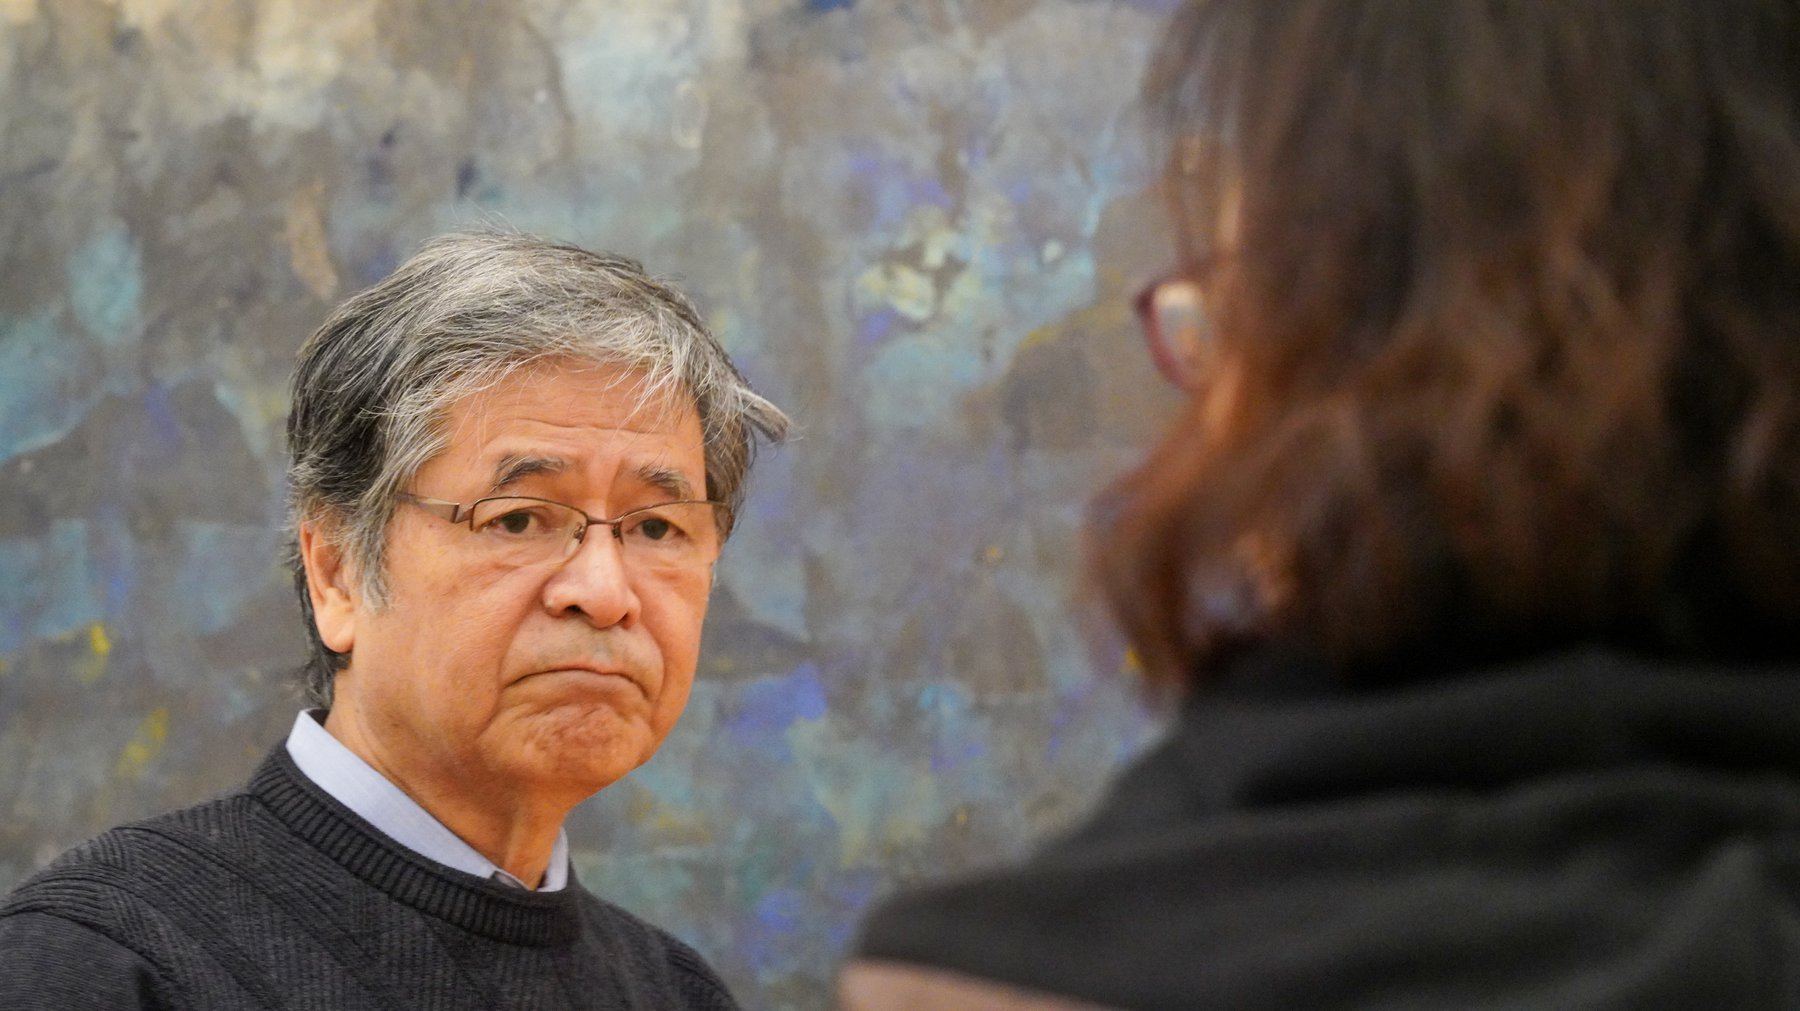 사키마미술관 관장인 사키마 미치오 선생님은 제주다크투어 활동가들에게 미술관 작품들의 의미를 설명해주셨습니다